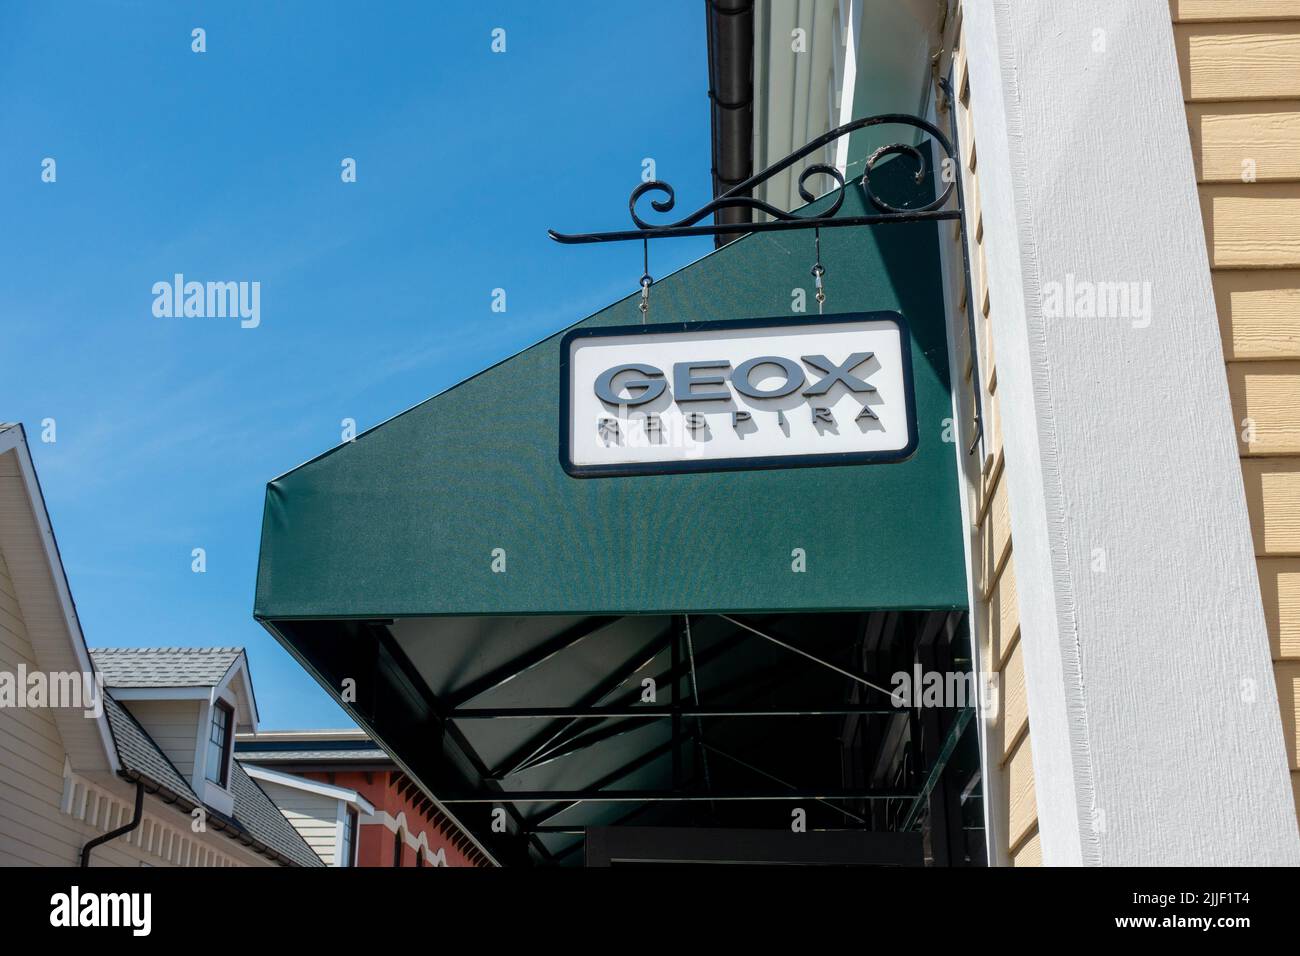 Geox -Fotos und -Bildmaterial in hoher Auflösung – Alamy